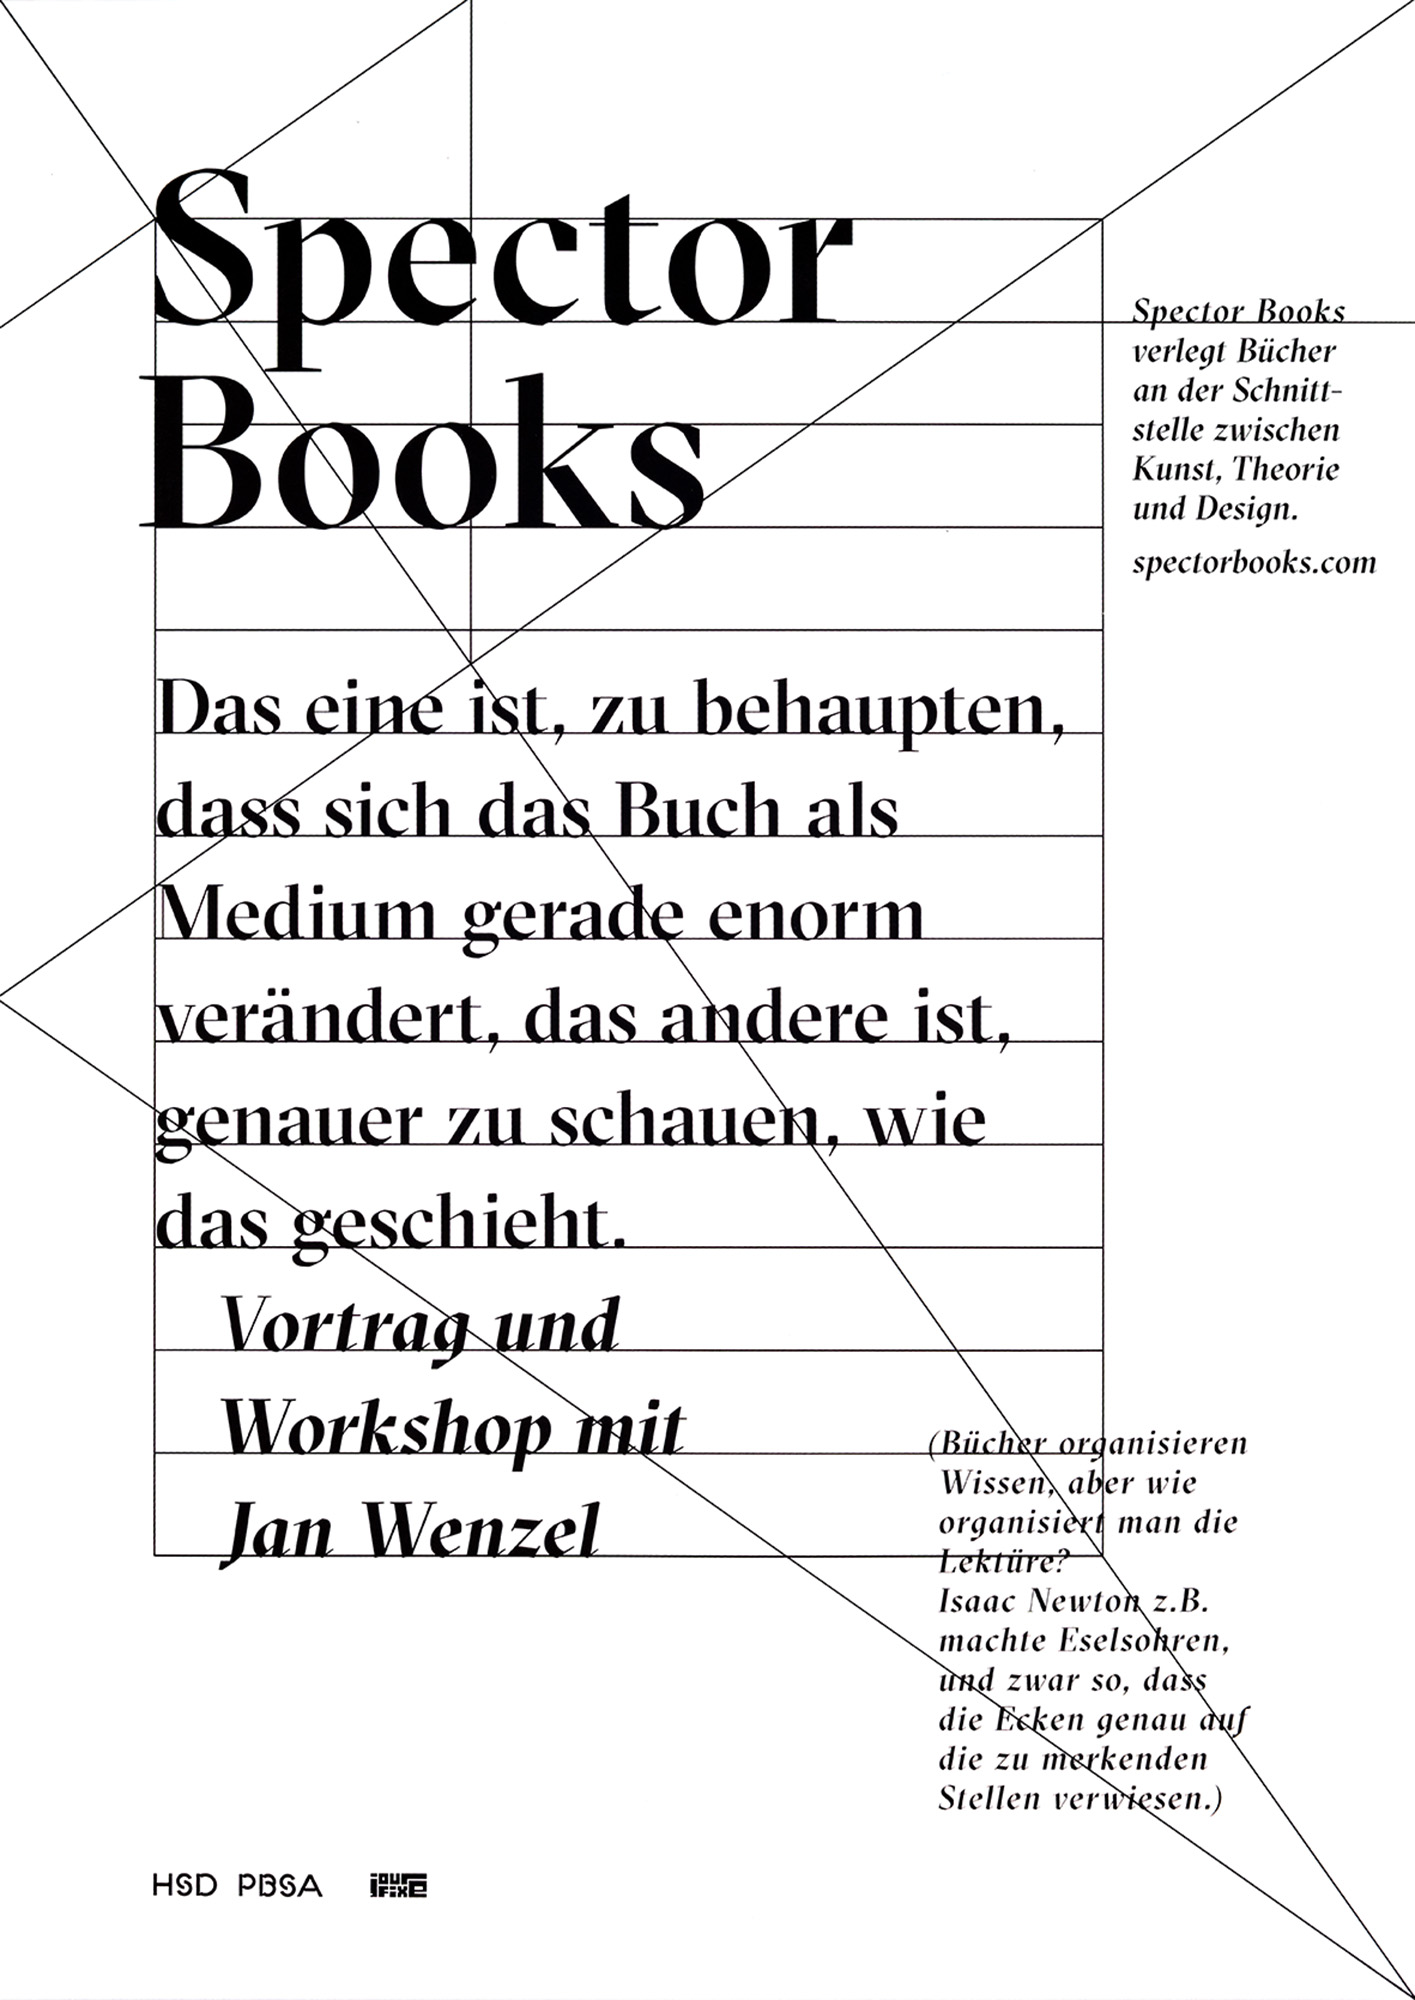 Gestaltet: Filip Zdrojewski, Titel: Spector Books, Jahr: 2015